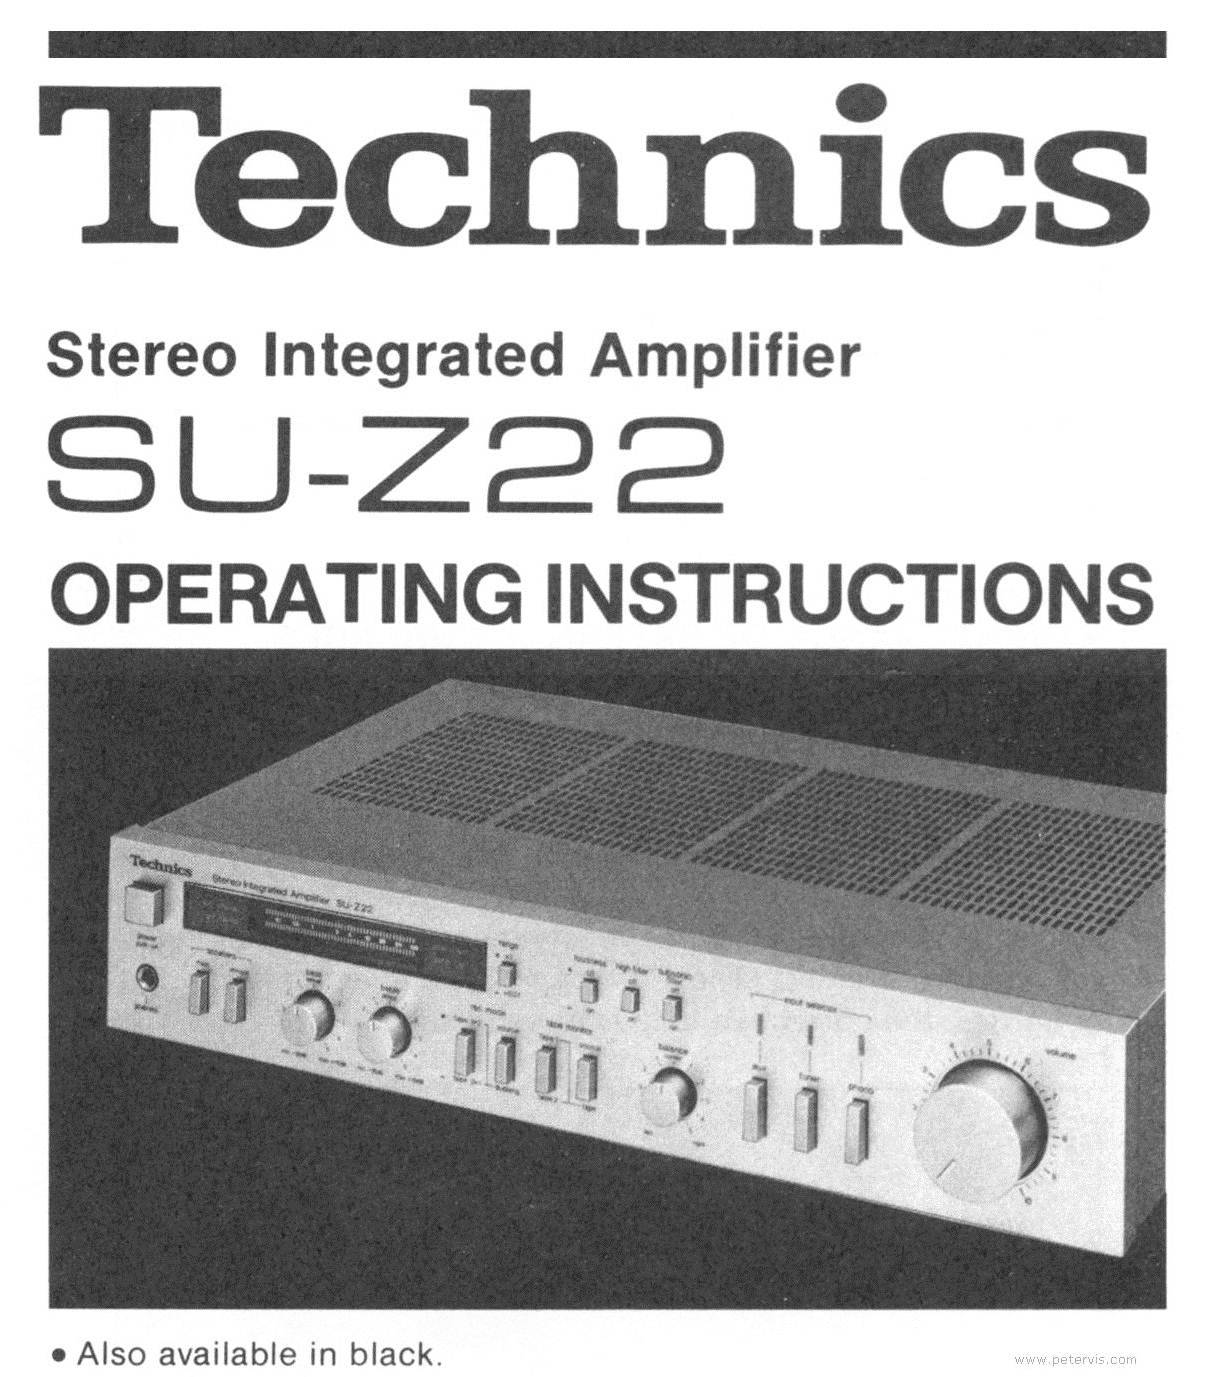 Technics SU-Z22